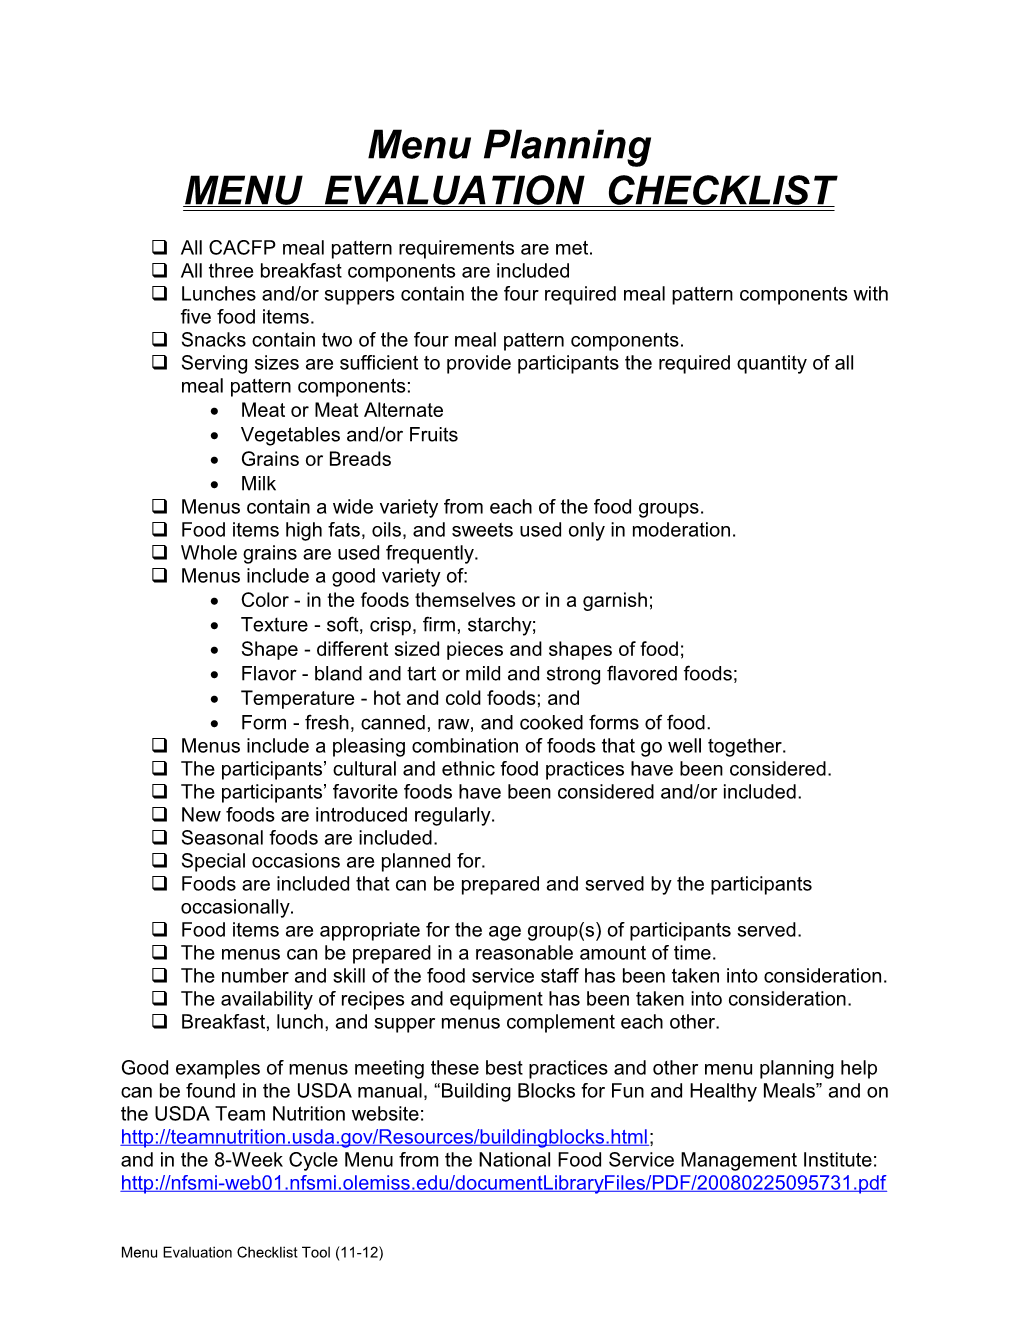 Menu Evaluation Checklist